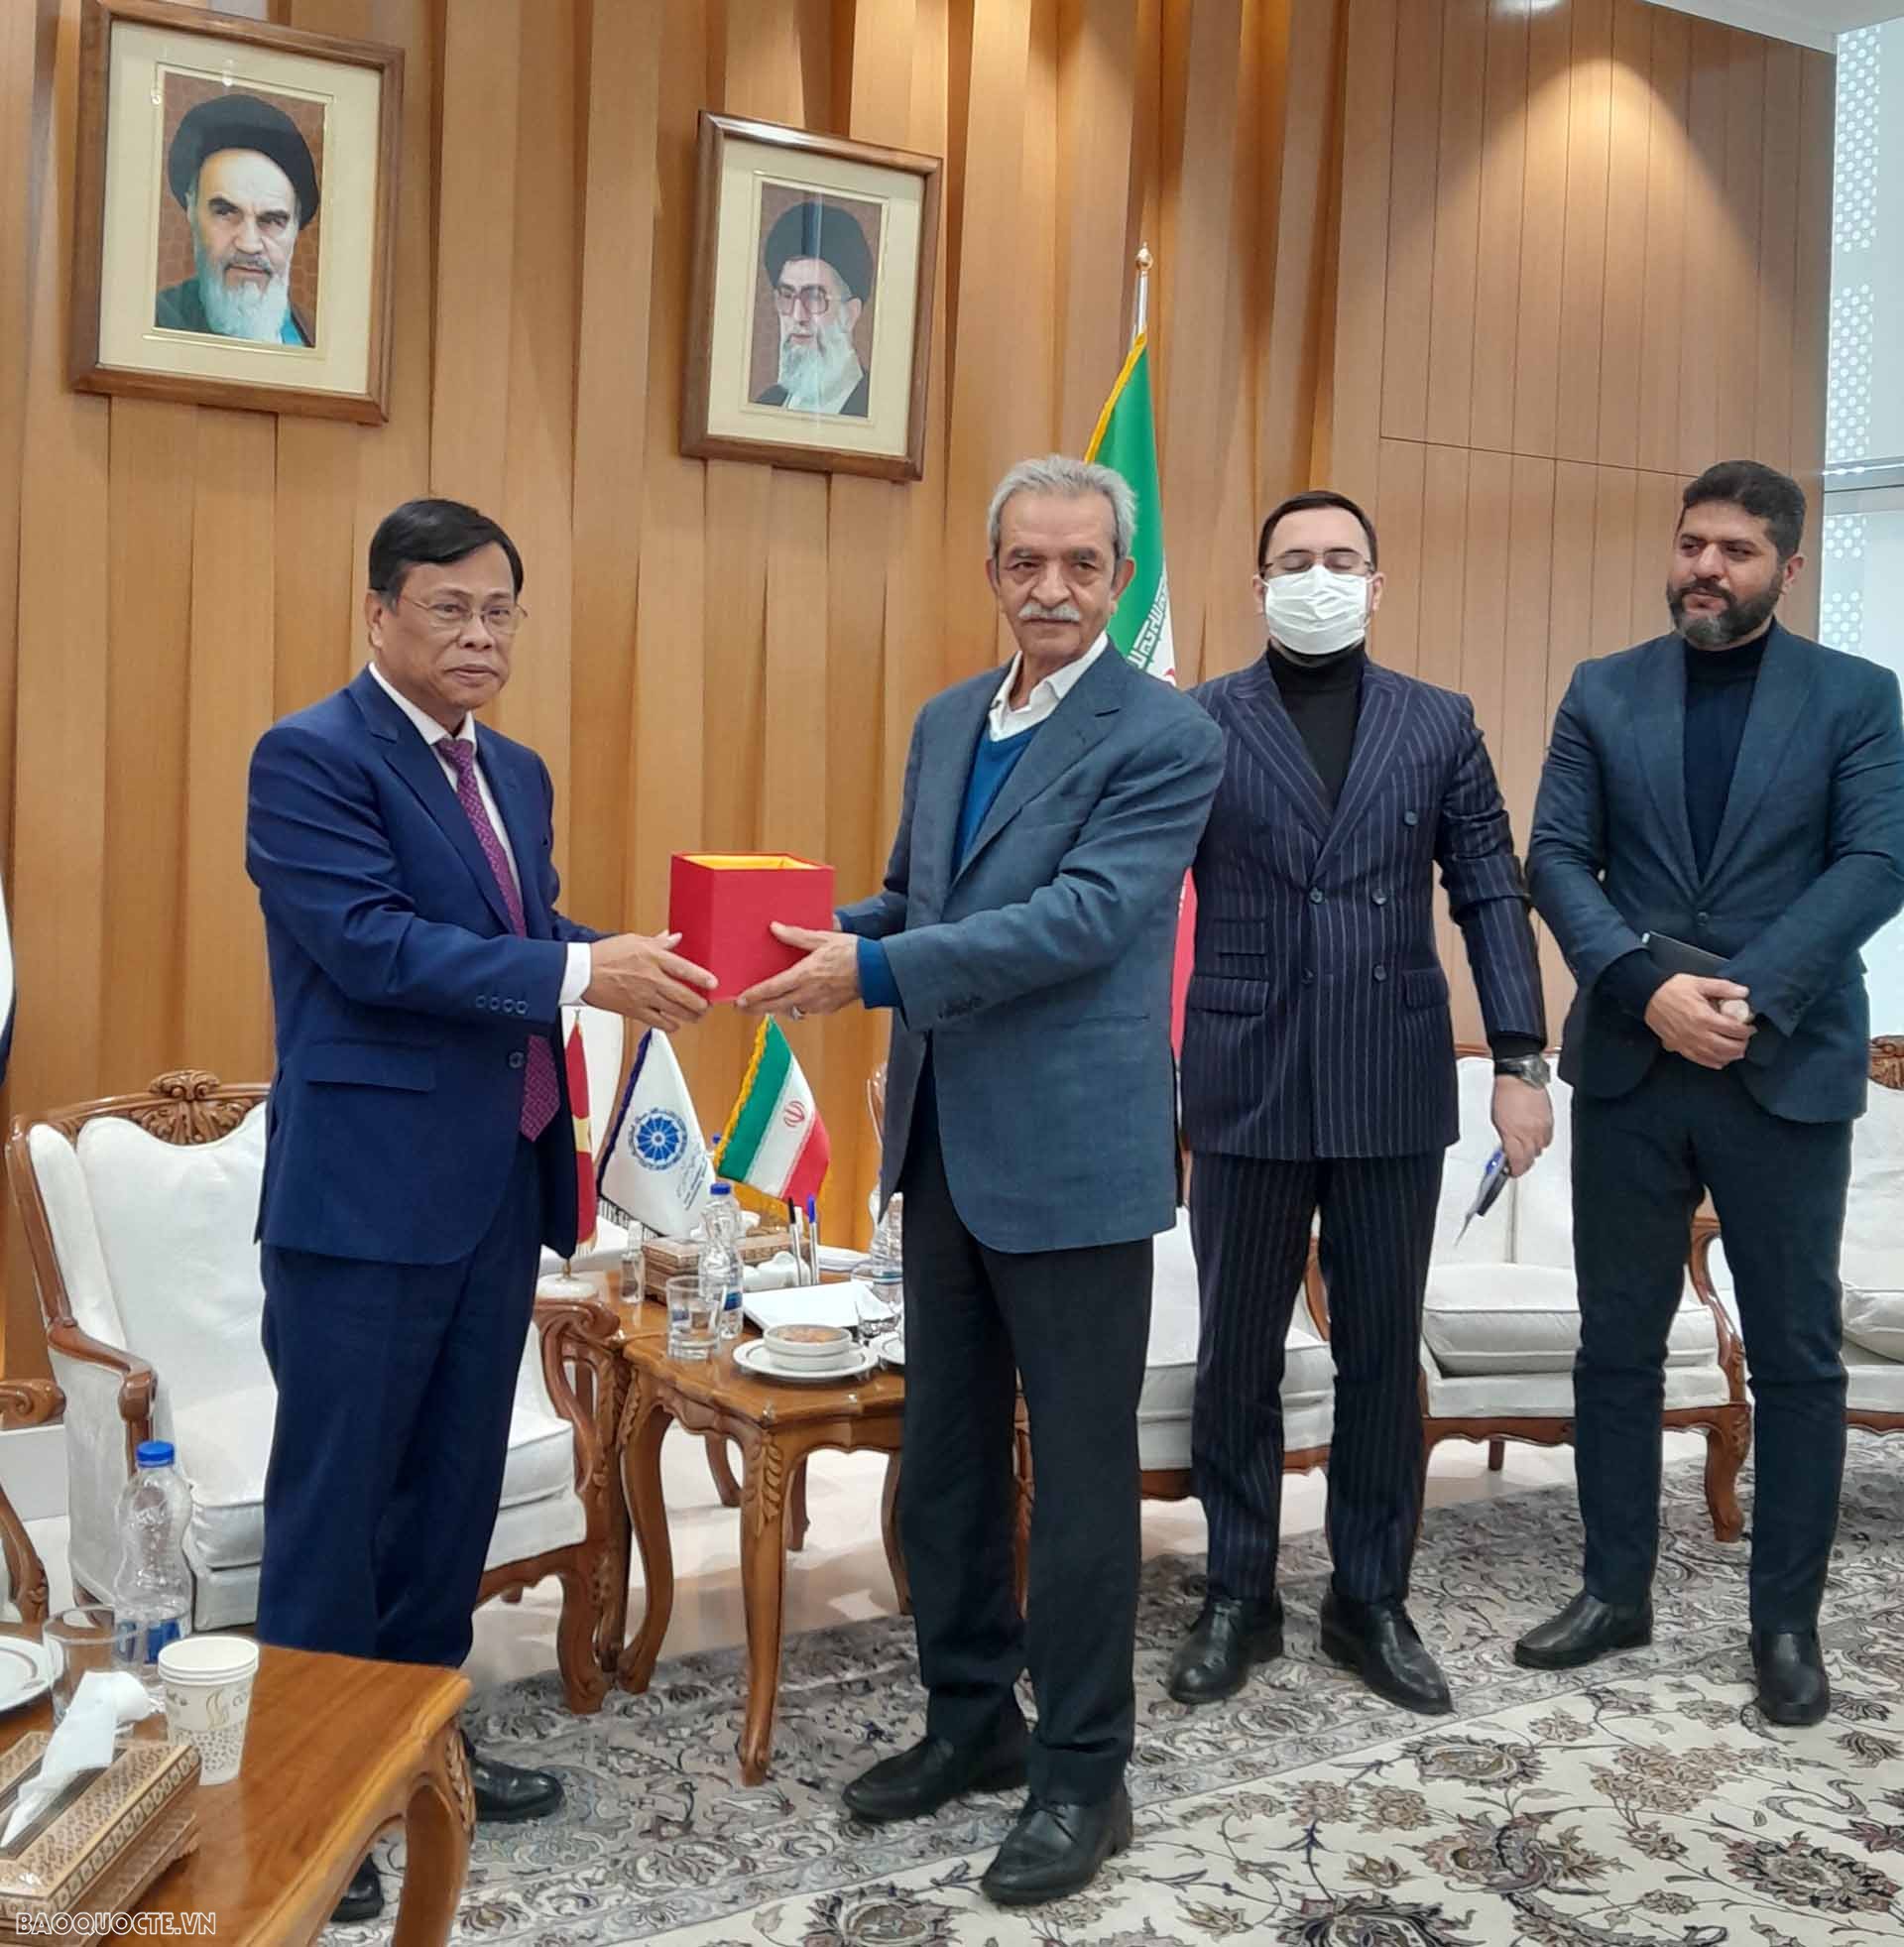 Đại sứ Lương Quốc Huy khẳng định Iran là đối tác thương mại quan trọng của Việt Nam tại khu vực Trung Đông.